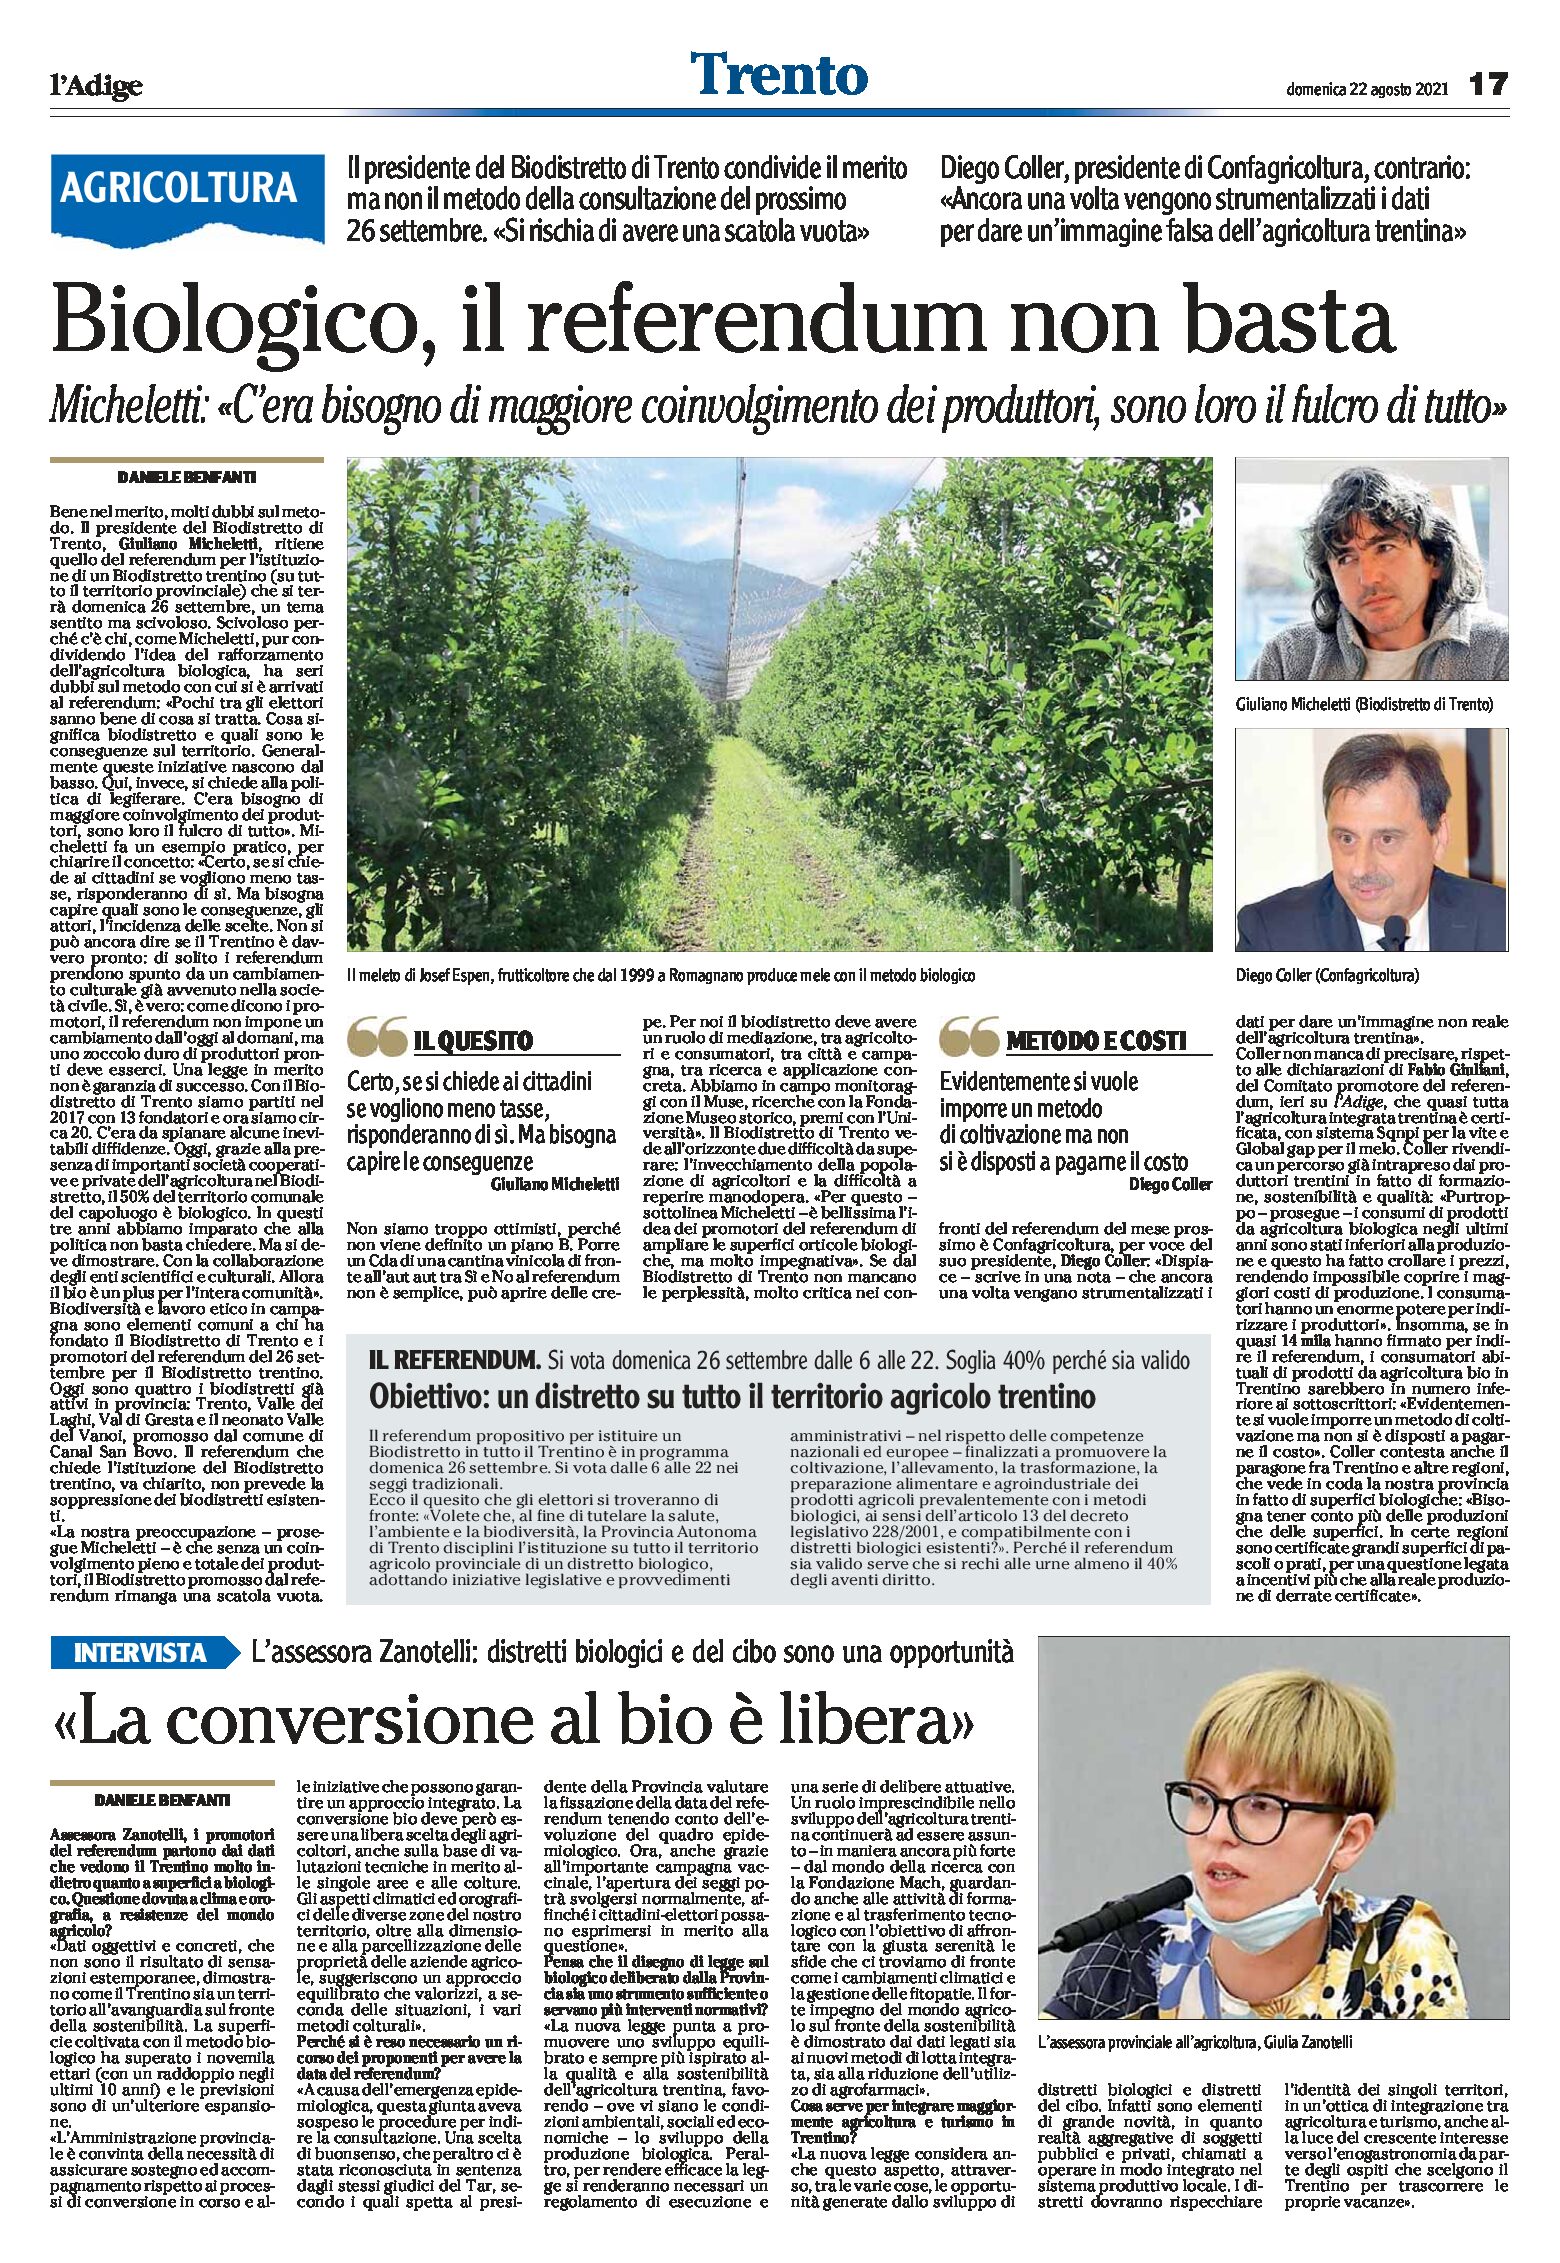 Trento, biologico: il referendum non basta